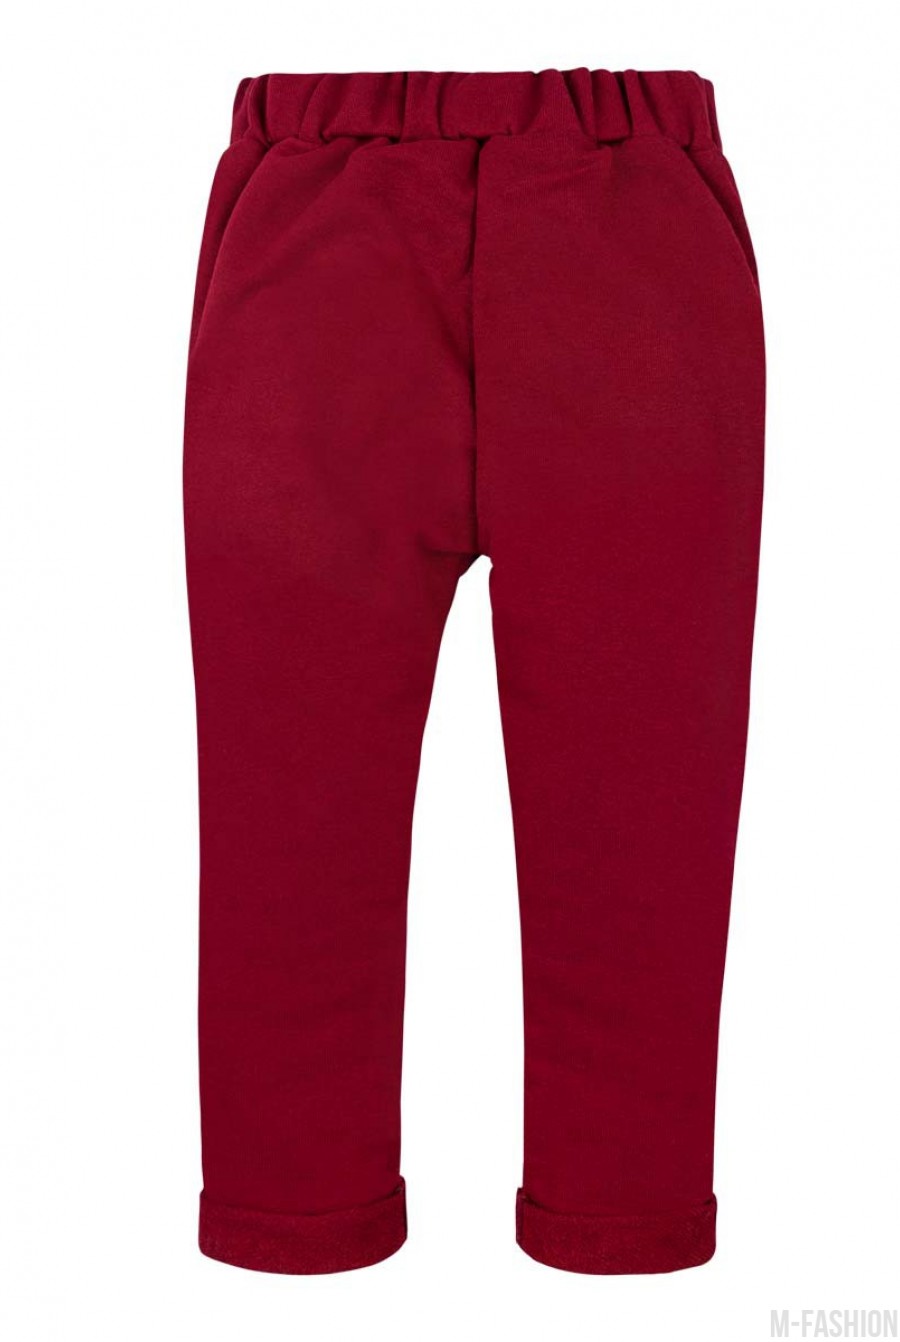 Красные штаны из футера на резинке, с карманами и подворотами- Фото 4